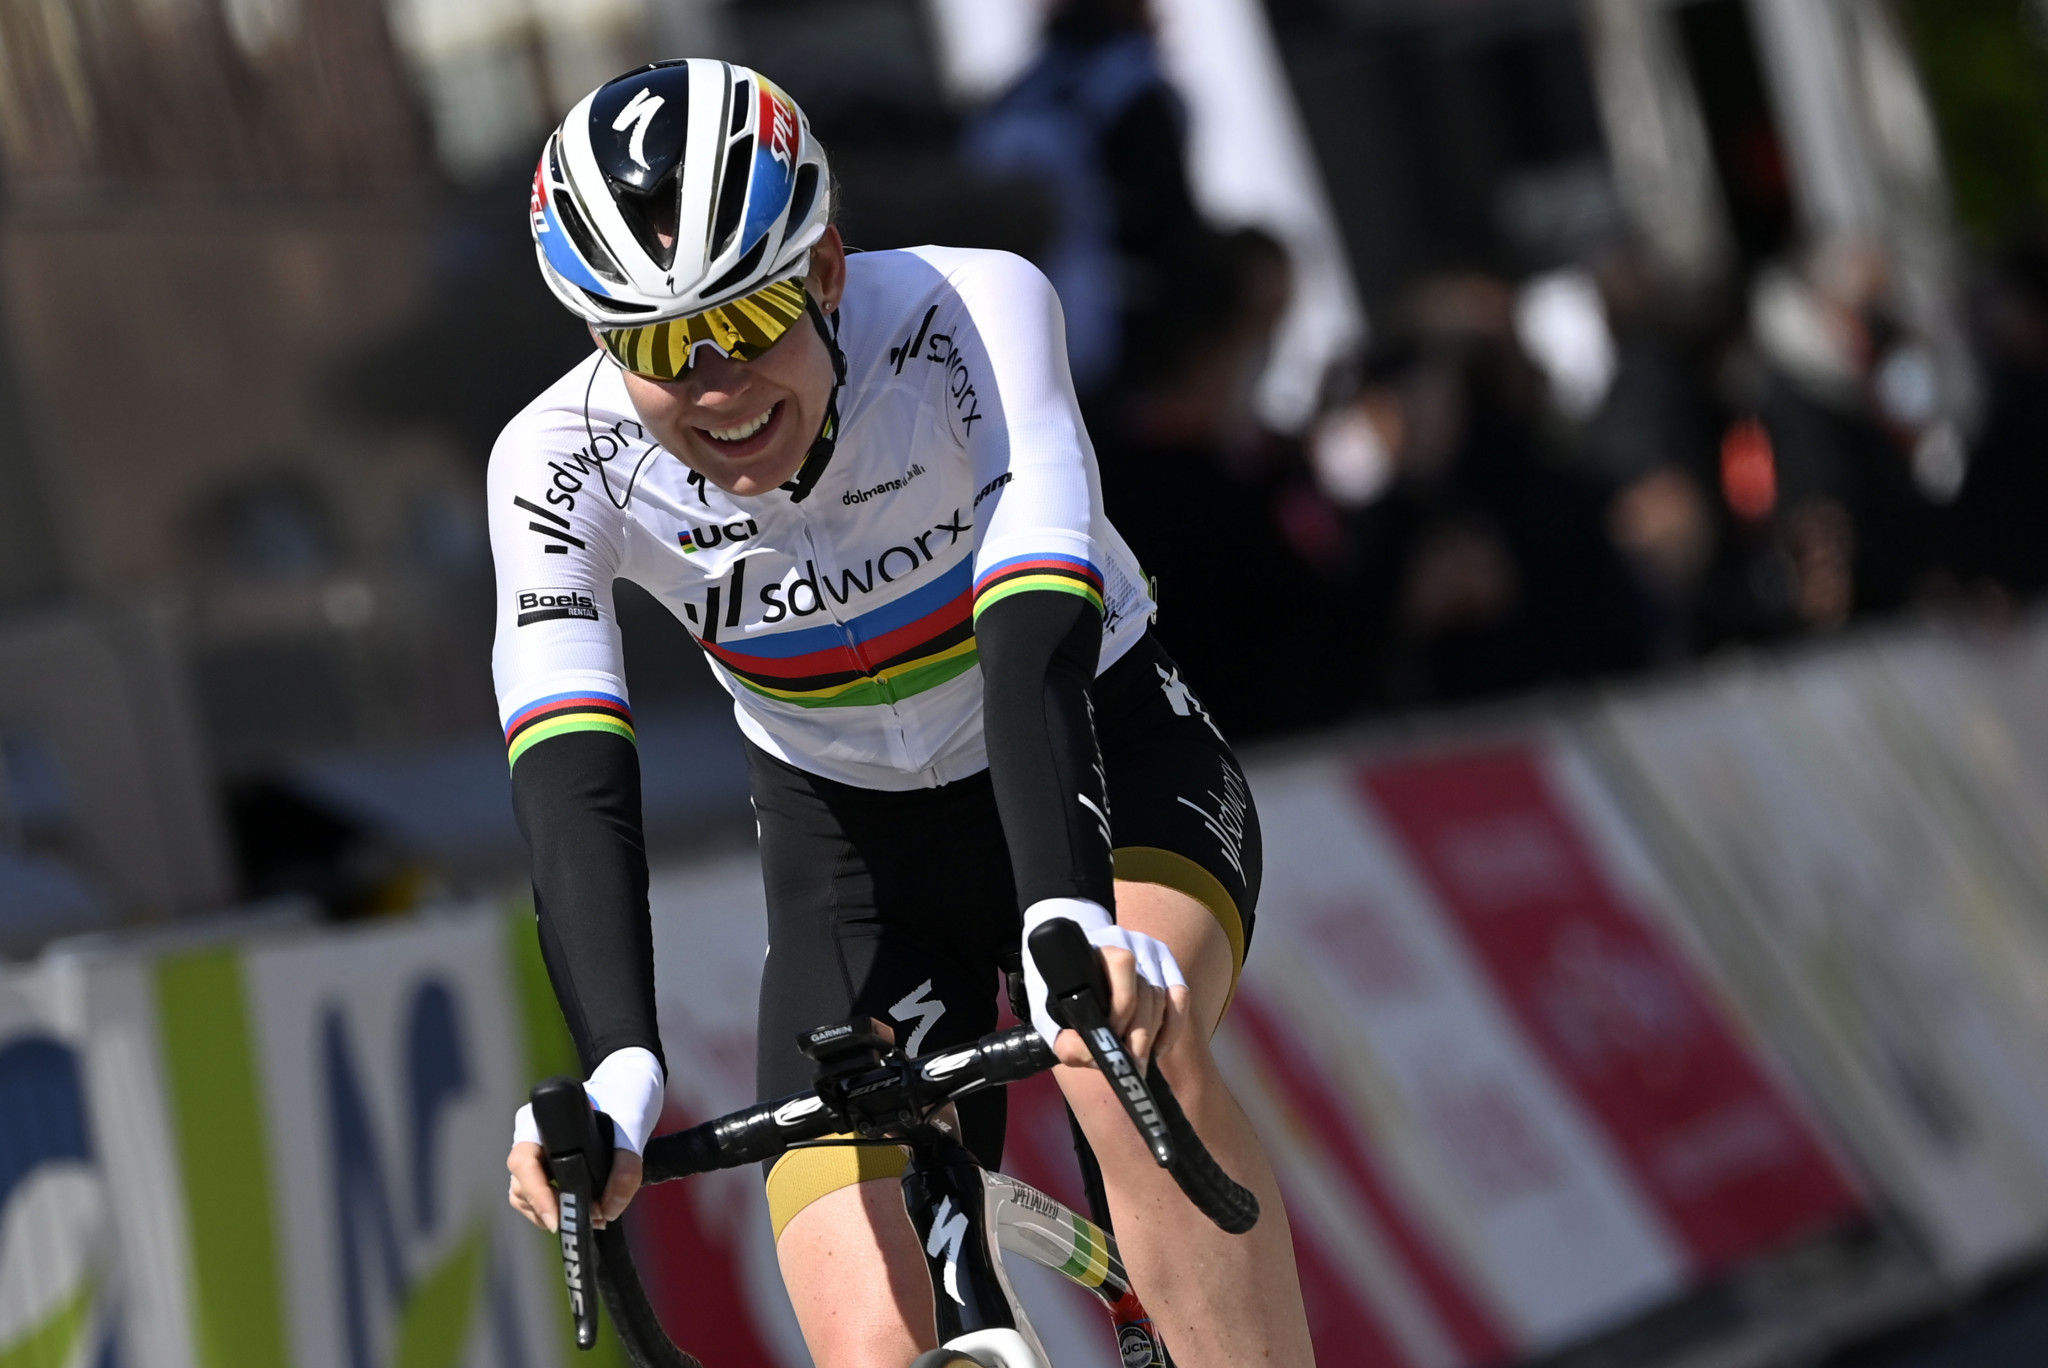 Van der Breggen wins Vuelta a Burgos Feminas after victory on final stage